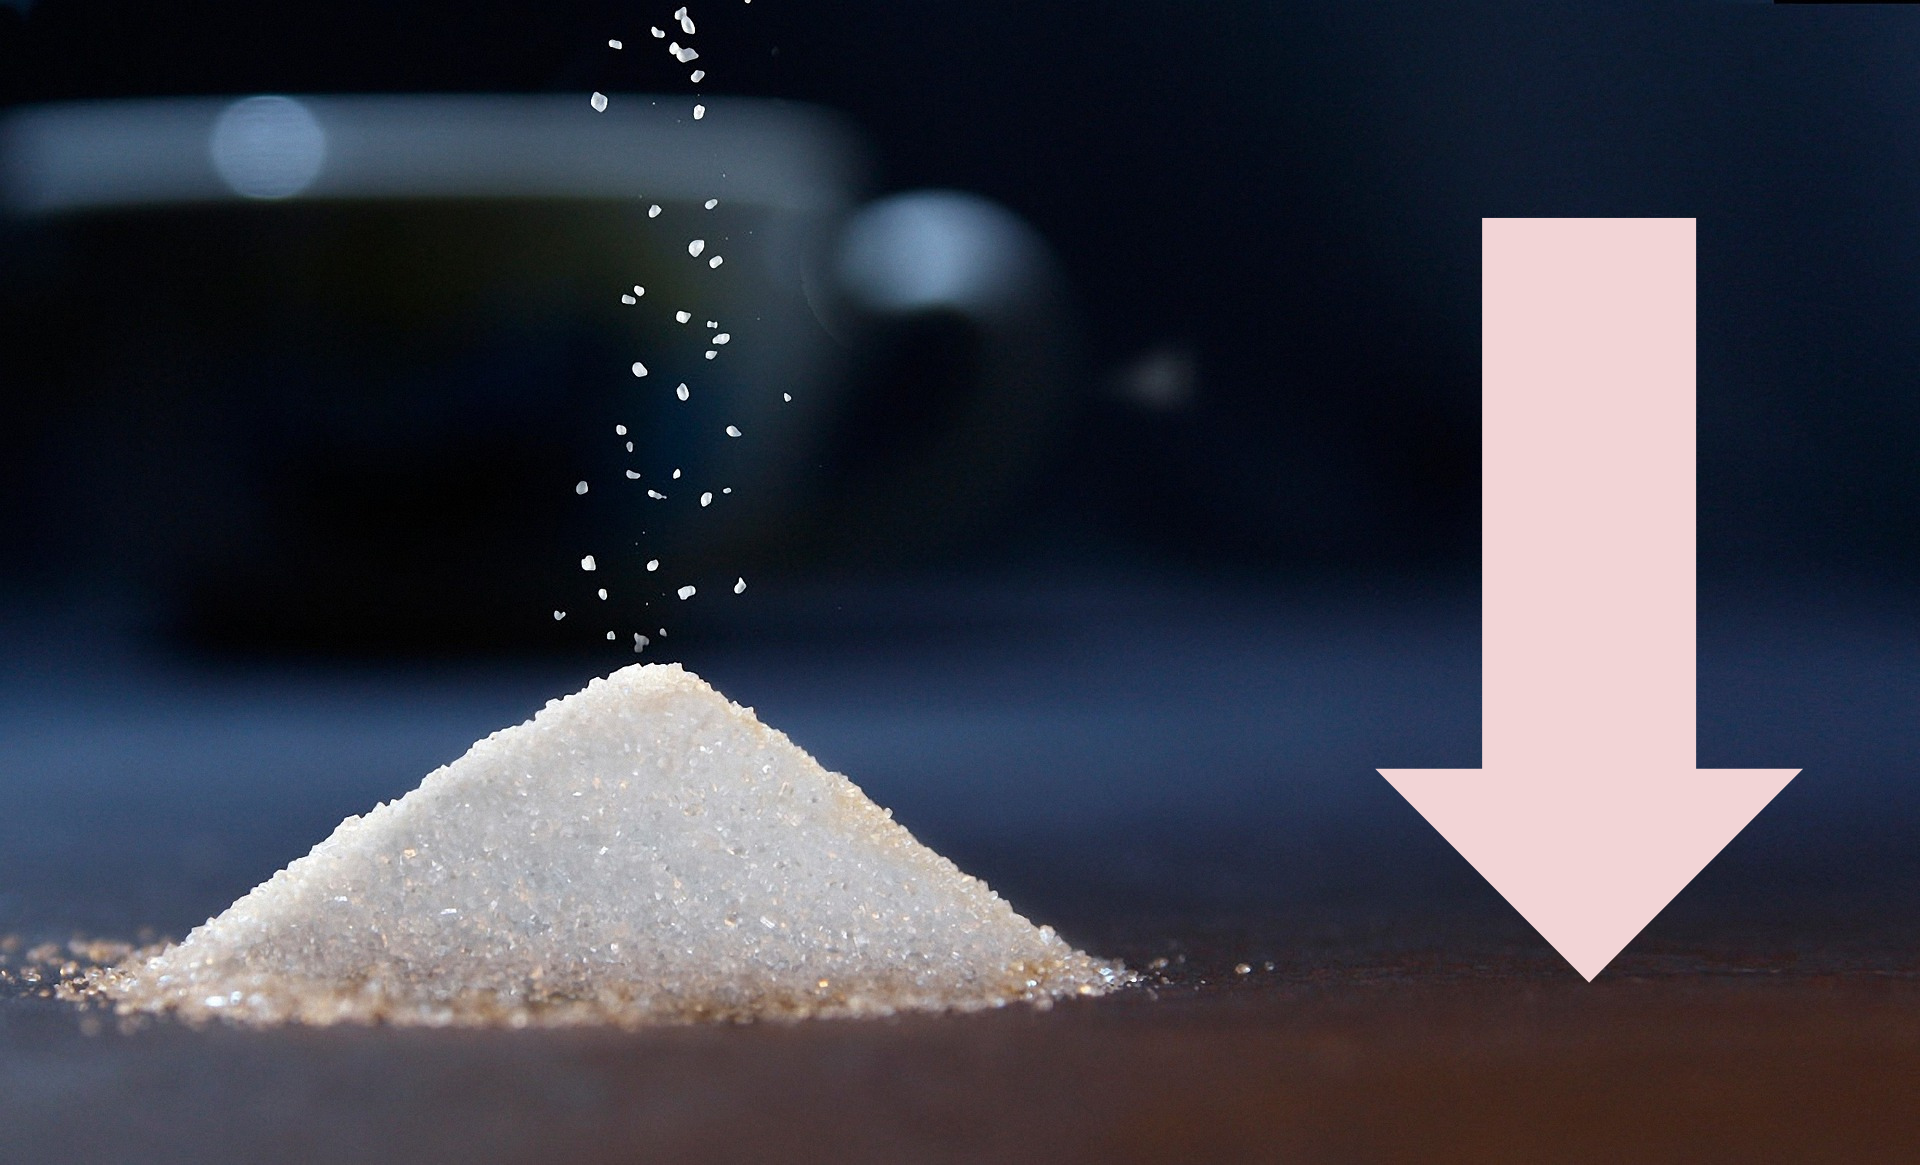 reduce sugar consumption